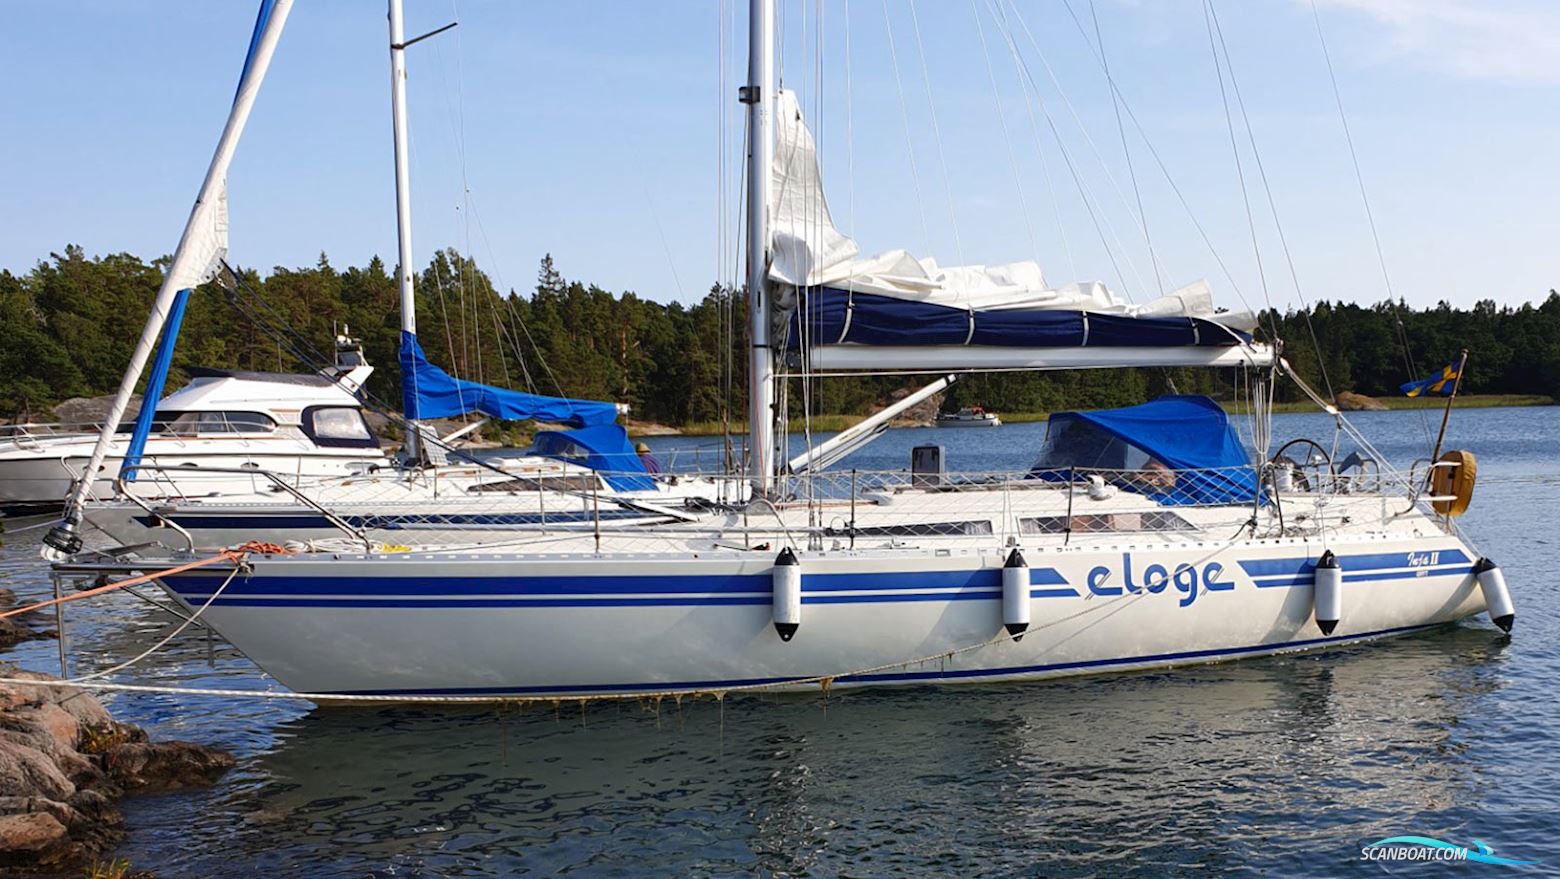 Eloge Eloge 38 Segelboot 1997, mit Volvo Penta motor, Sweden